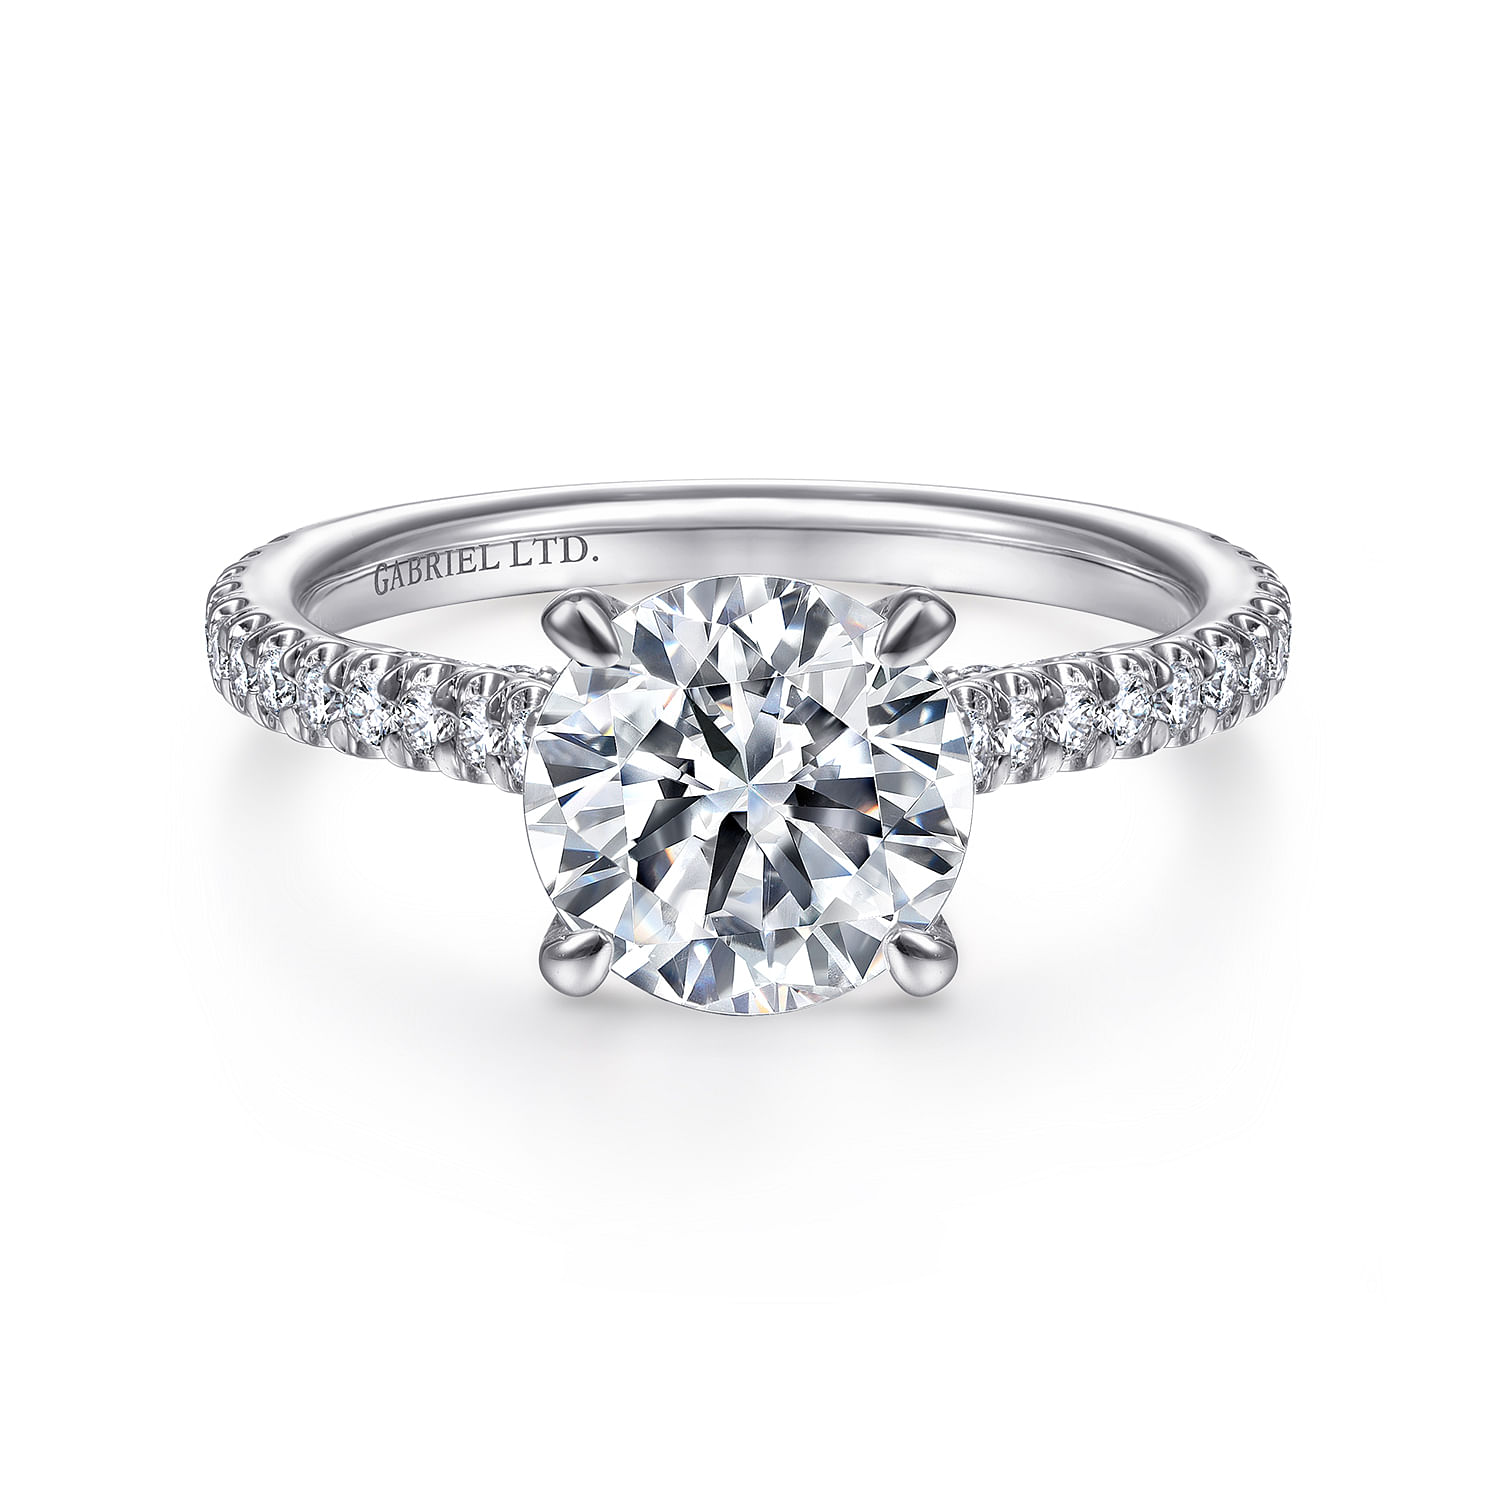 Charleston - 18K White Gold Round Diamond Engagement Ring